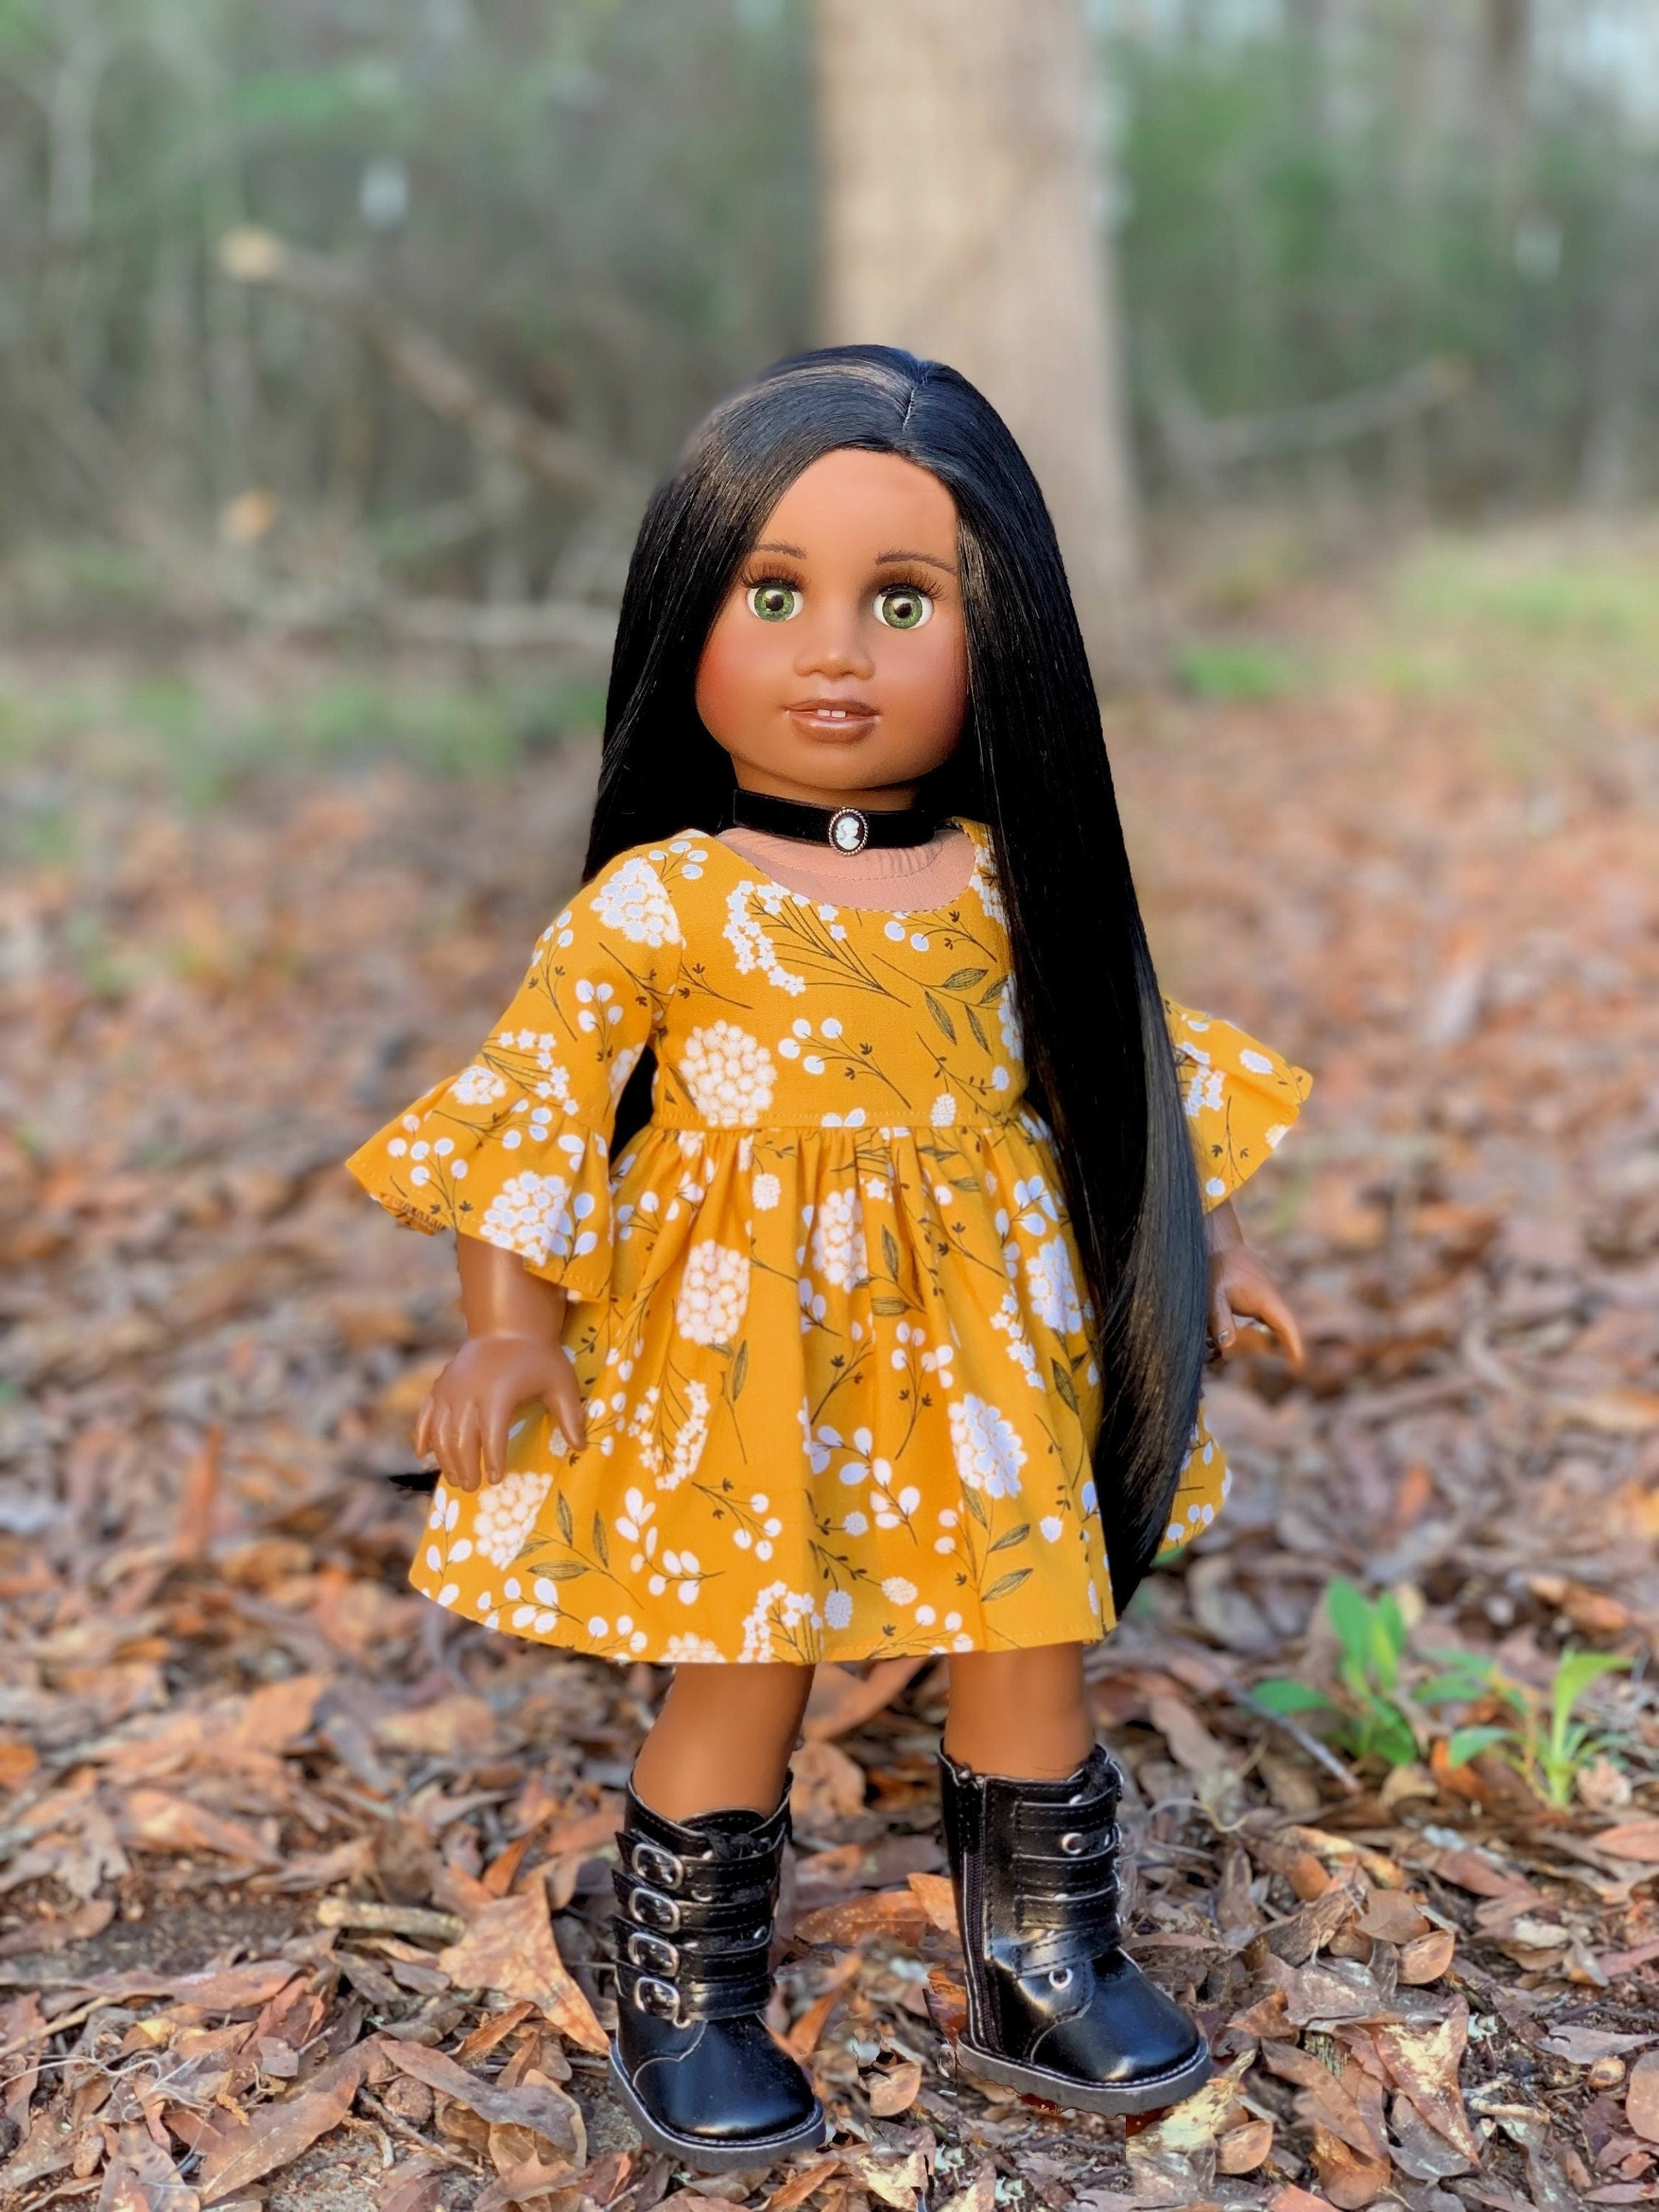 Custom doll wig for 18" American Girl Dolls - Heat Safe - Tangle Resistant - fits 10-11" head size of 18" dolls OG Blythe BJD Gotz Black